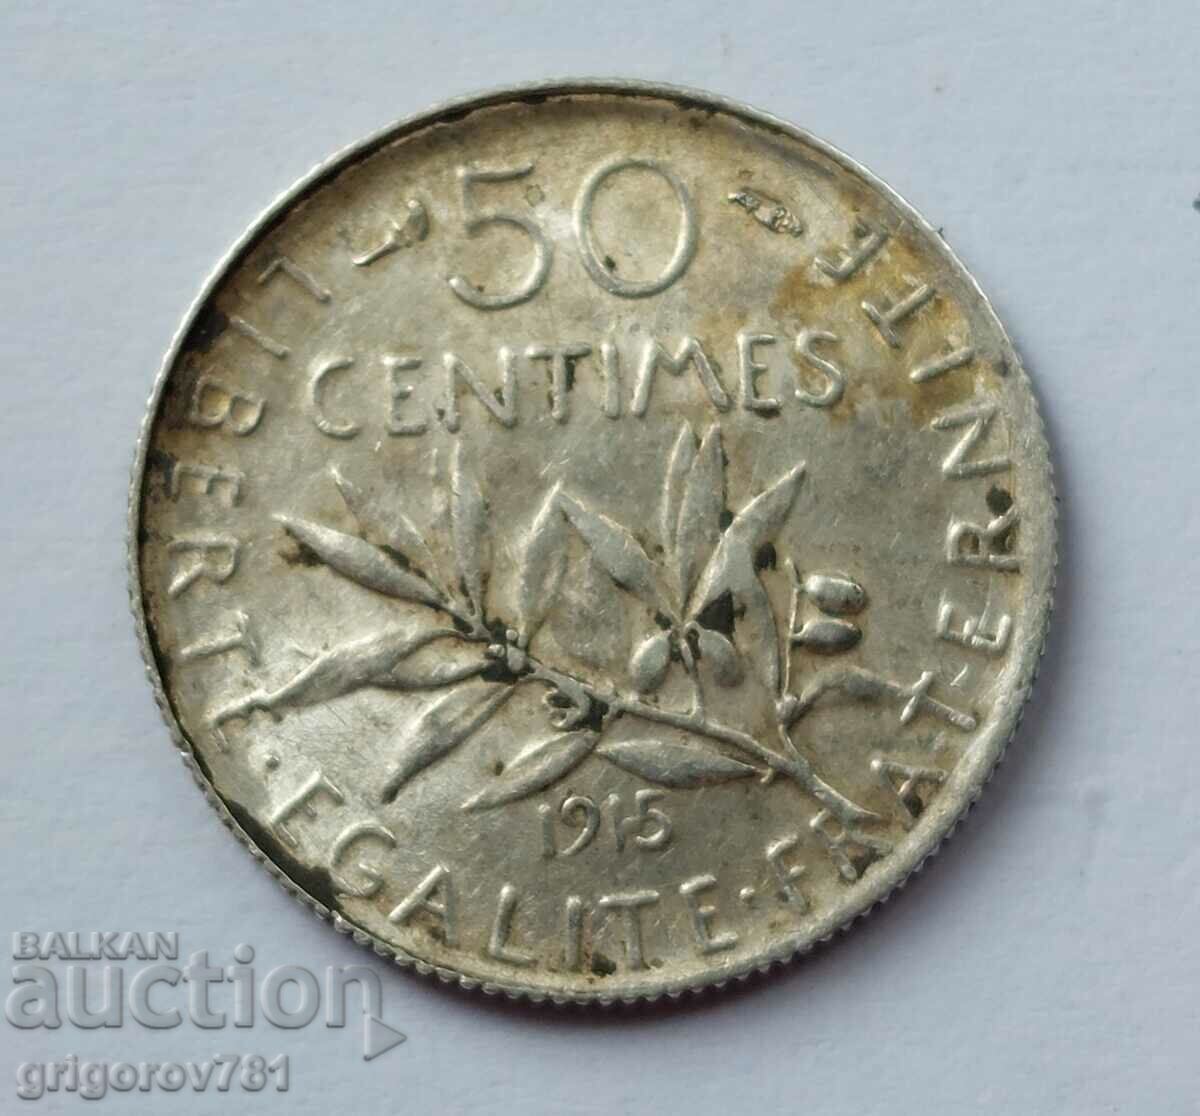 50 сантима сребро Франция 1915 -  сребърна монета №61